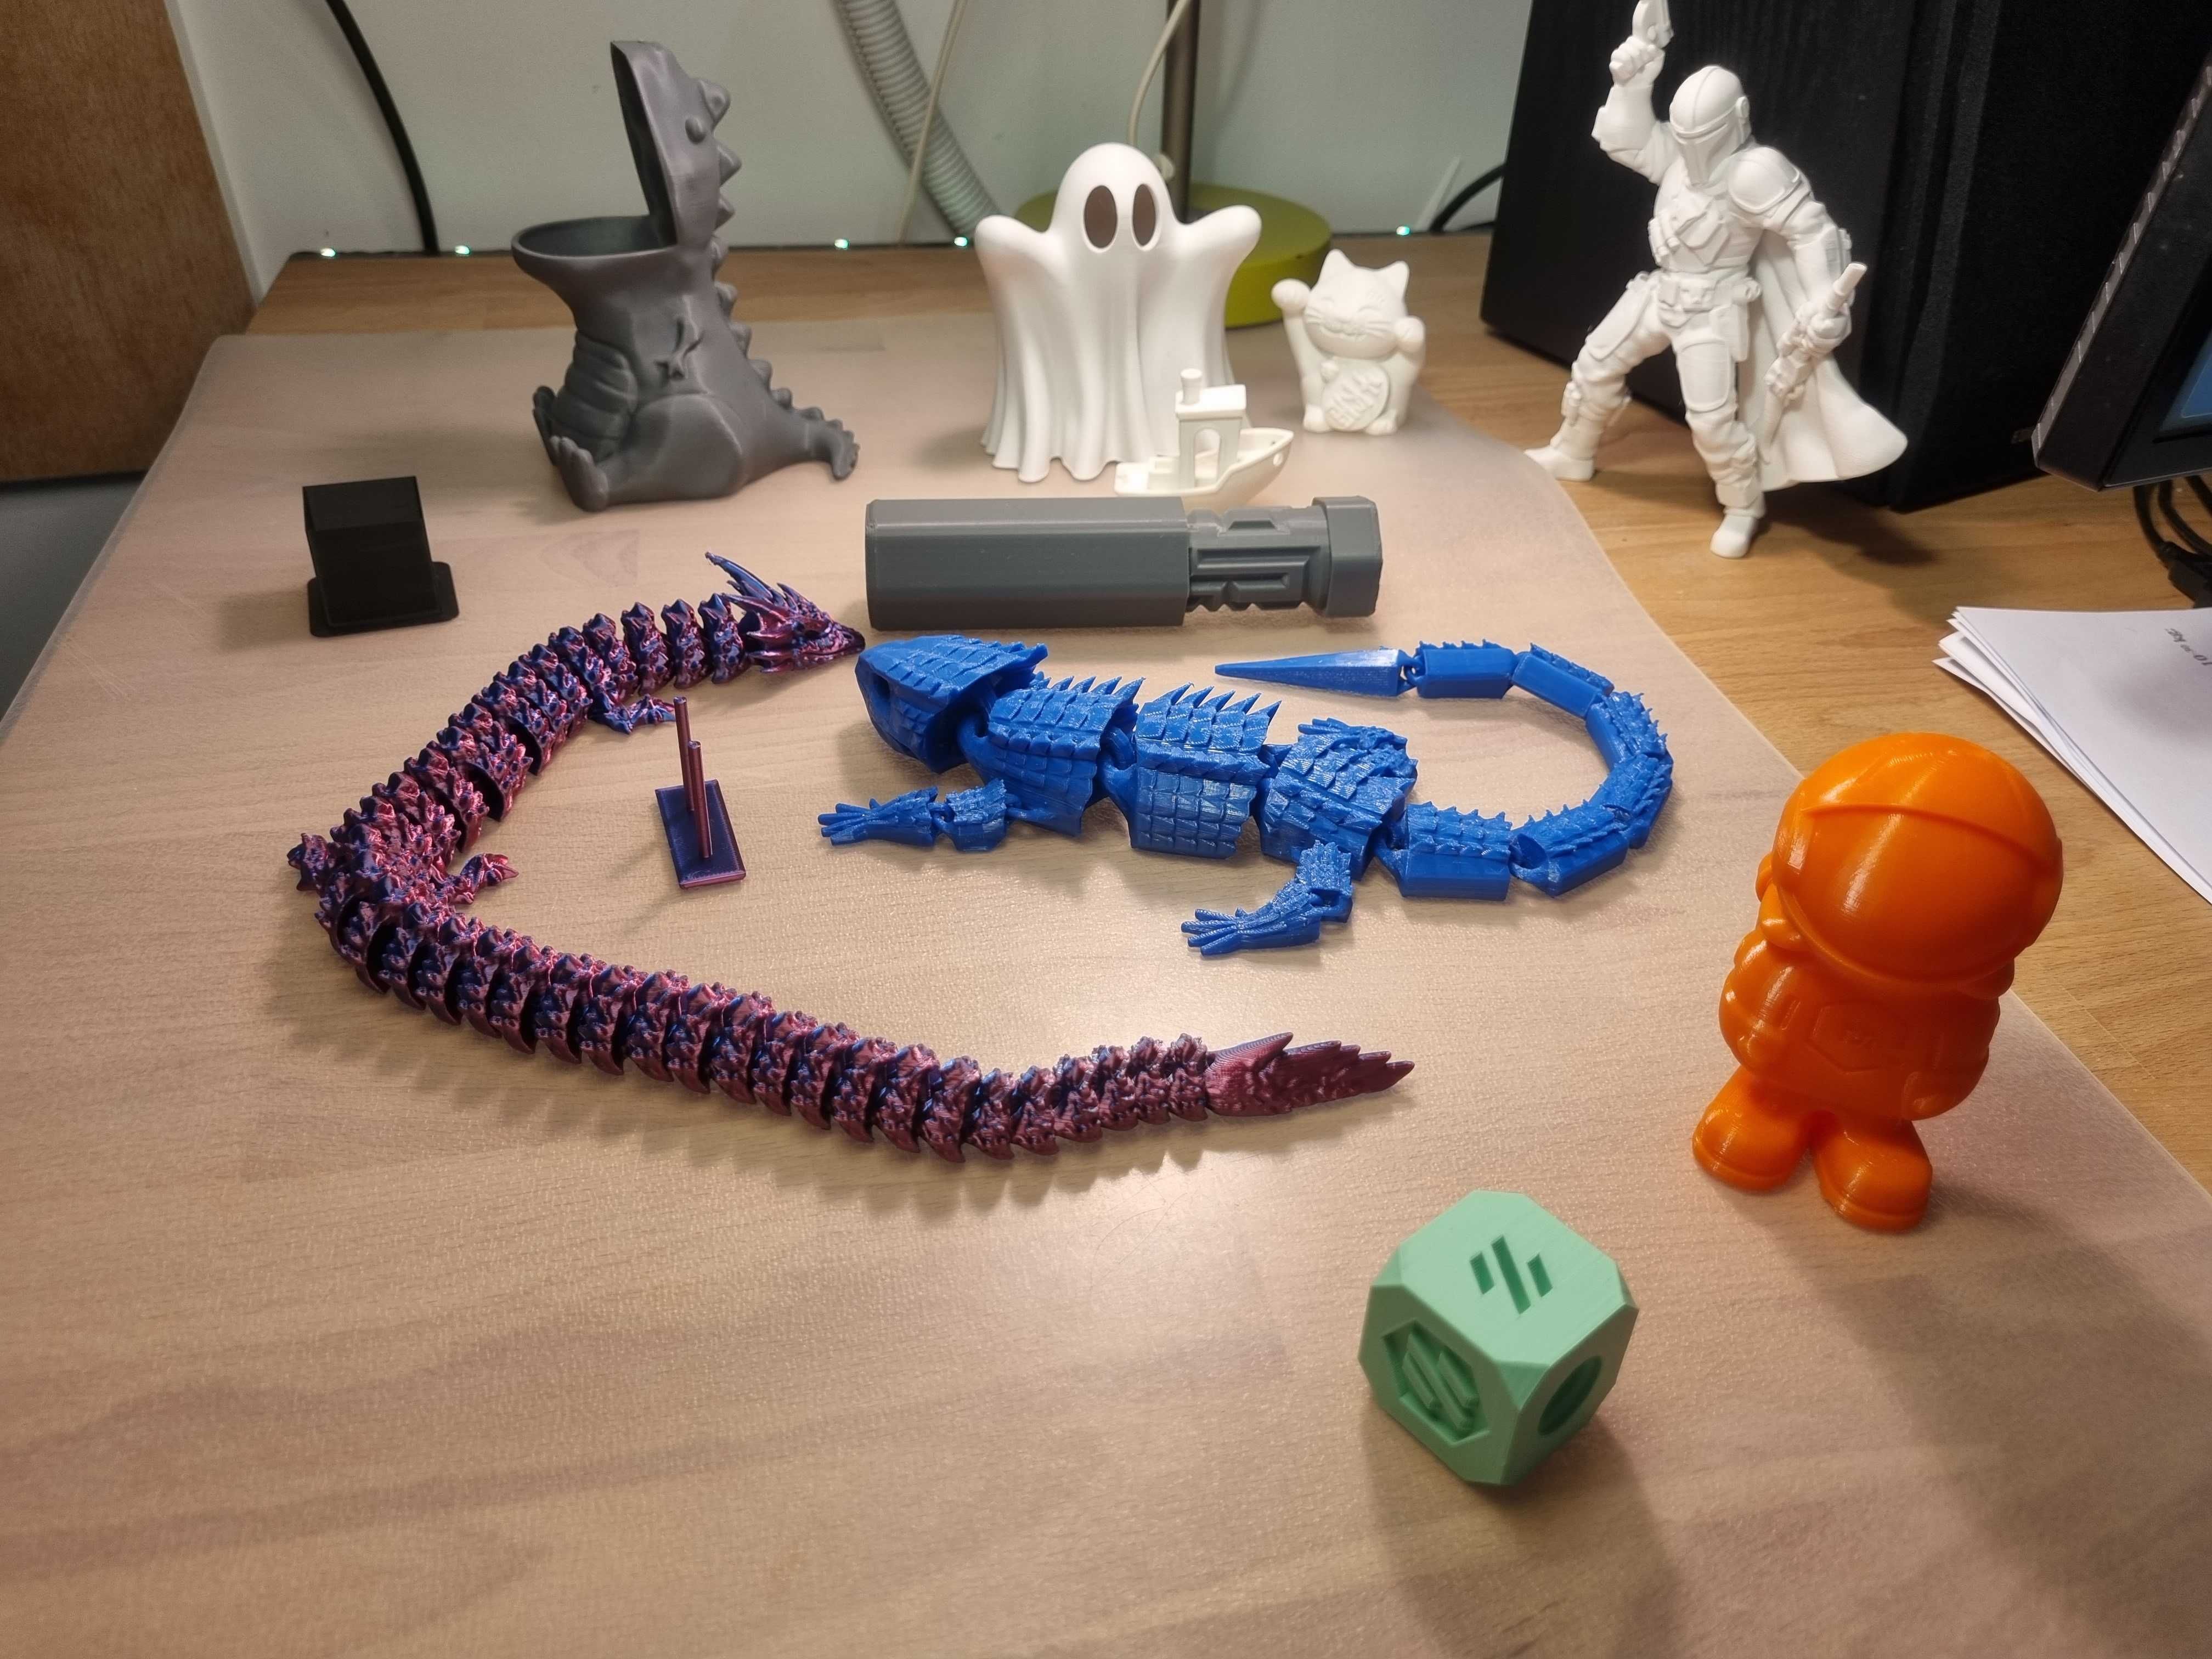 Impressora 3D Creality Ender 3 S1 + Mods e Bundle de vários Acessórios